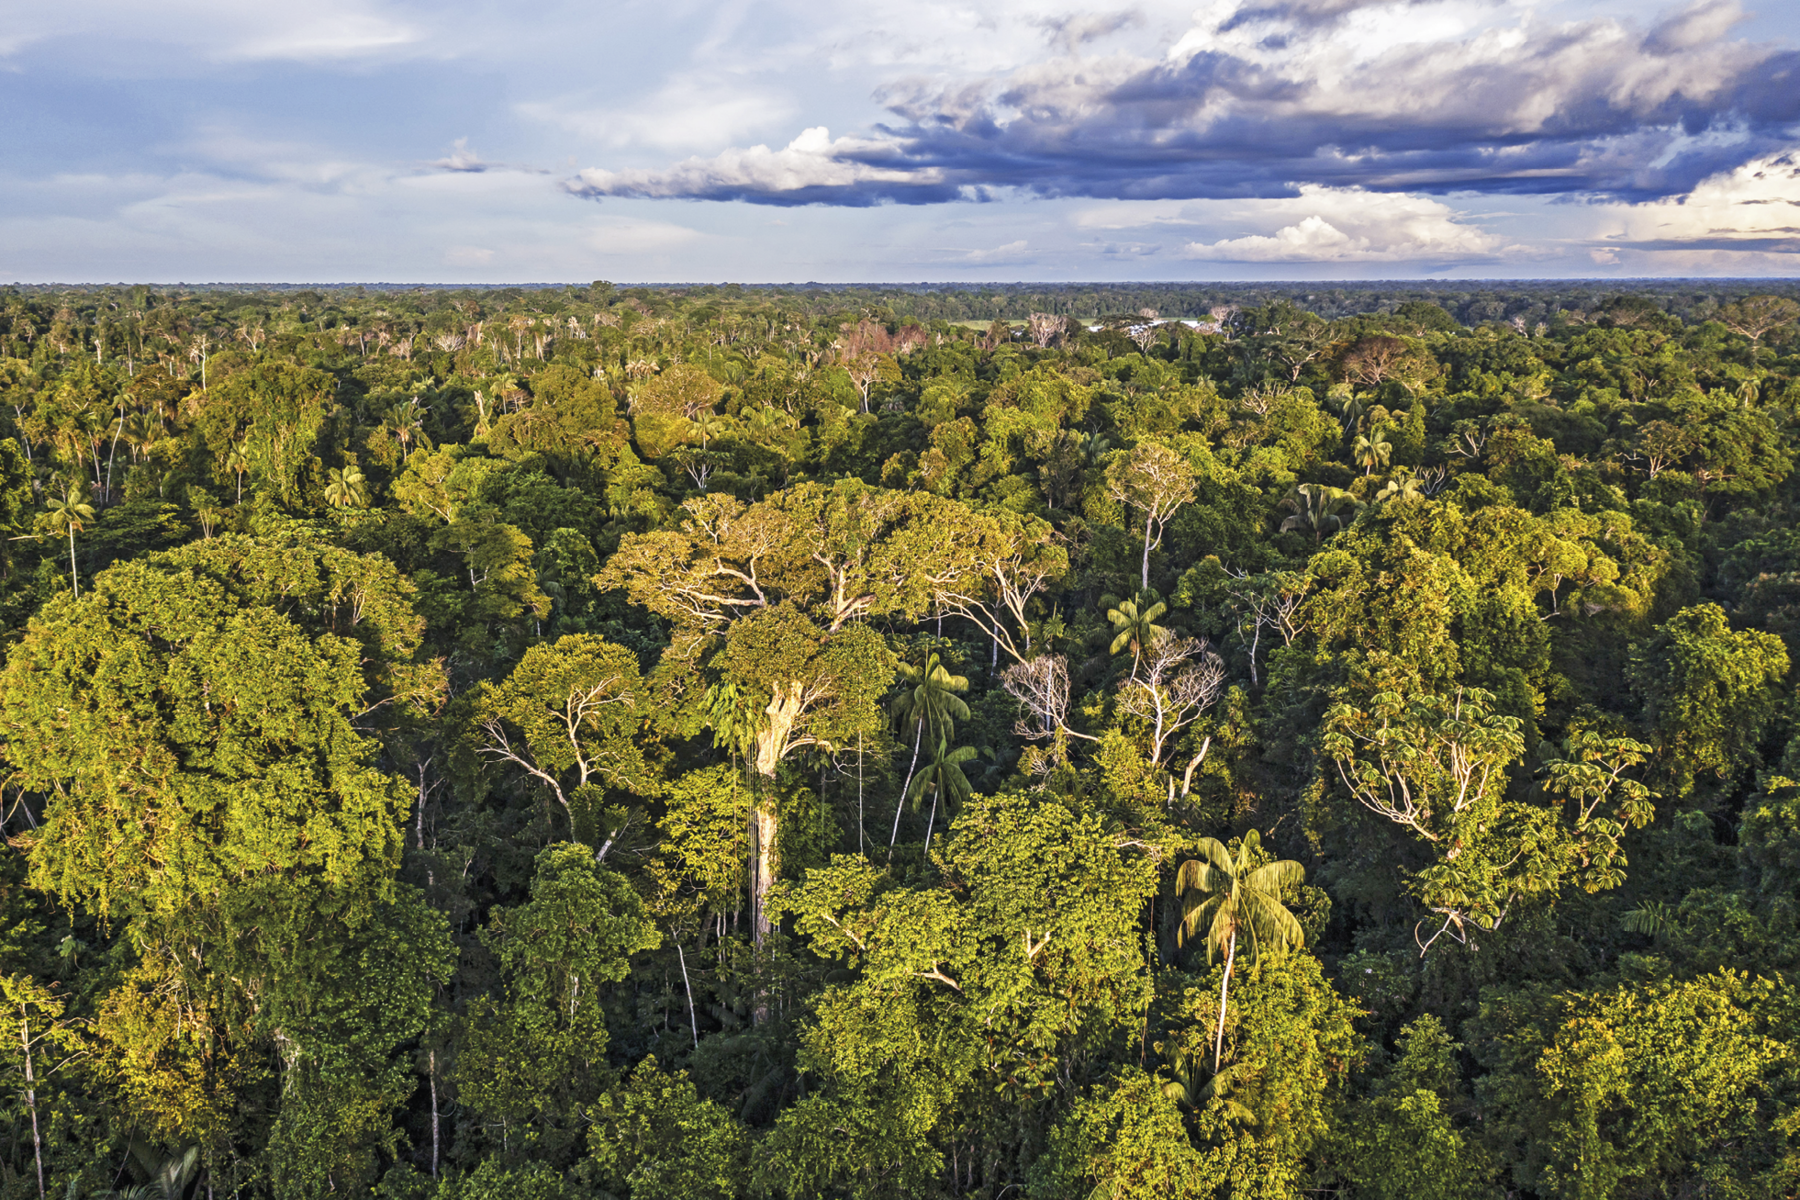 Fotografia. Imagem aérea de paisagem com uma floresta densa de árvores altas e troncos finos. Ao fundo, a linha do horizonte e um lindo céu azul com algumas nuvens brancas e azuladas.